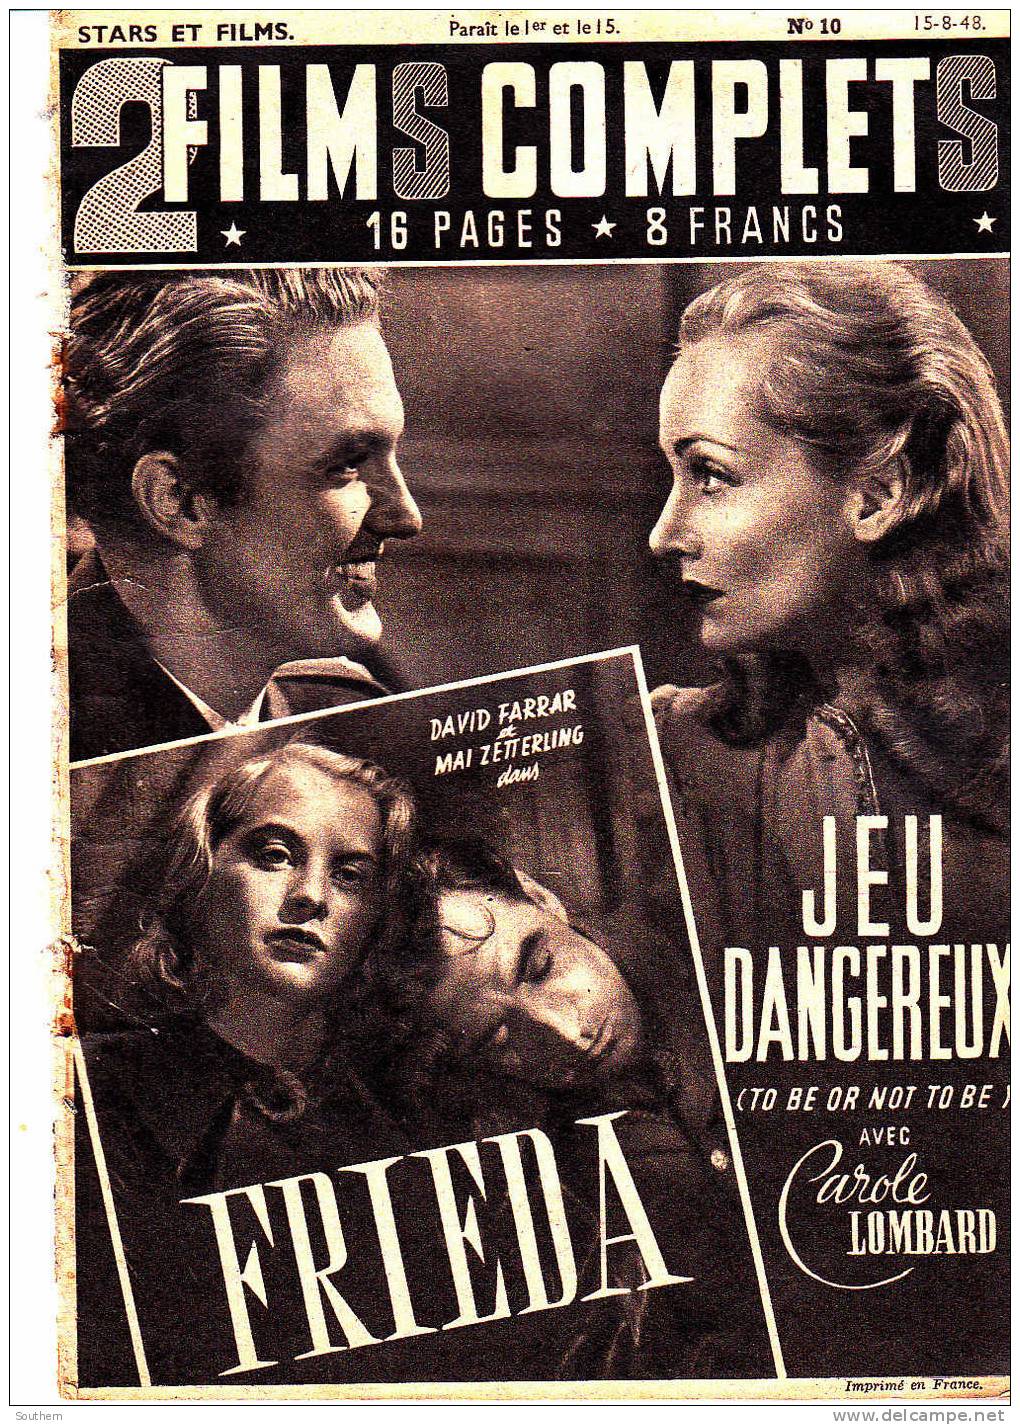 Stars Et Films 2 Films Complets N° 10 -15/08/1948 - " Frieda " - " Jeu Dangereux " - Cinéma/Télévision